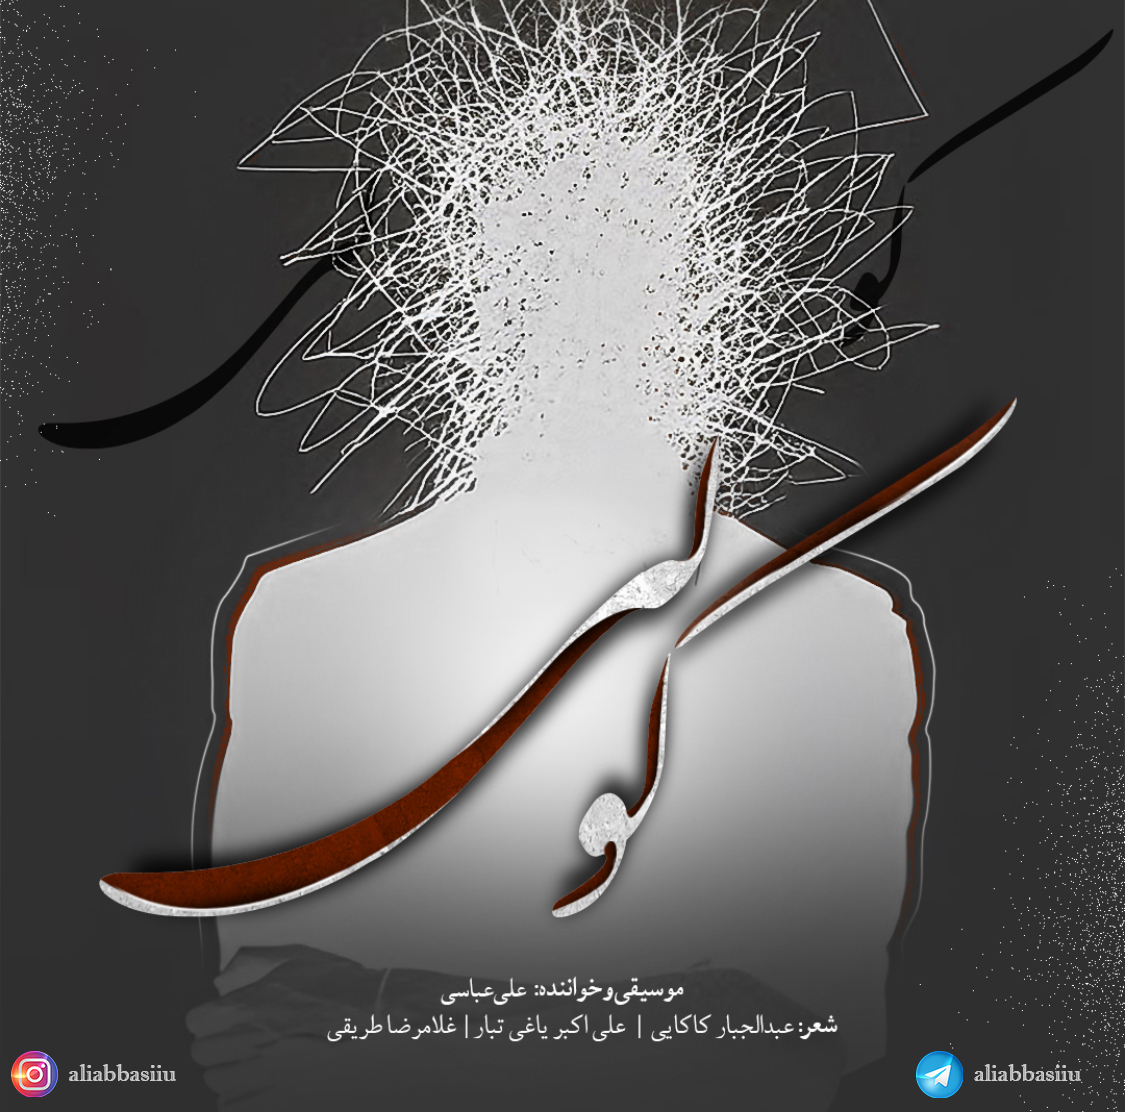 دانلود آهنگ جدید علی عباسی به نام گور دسته جمعی